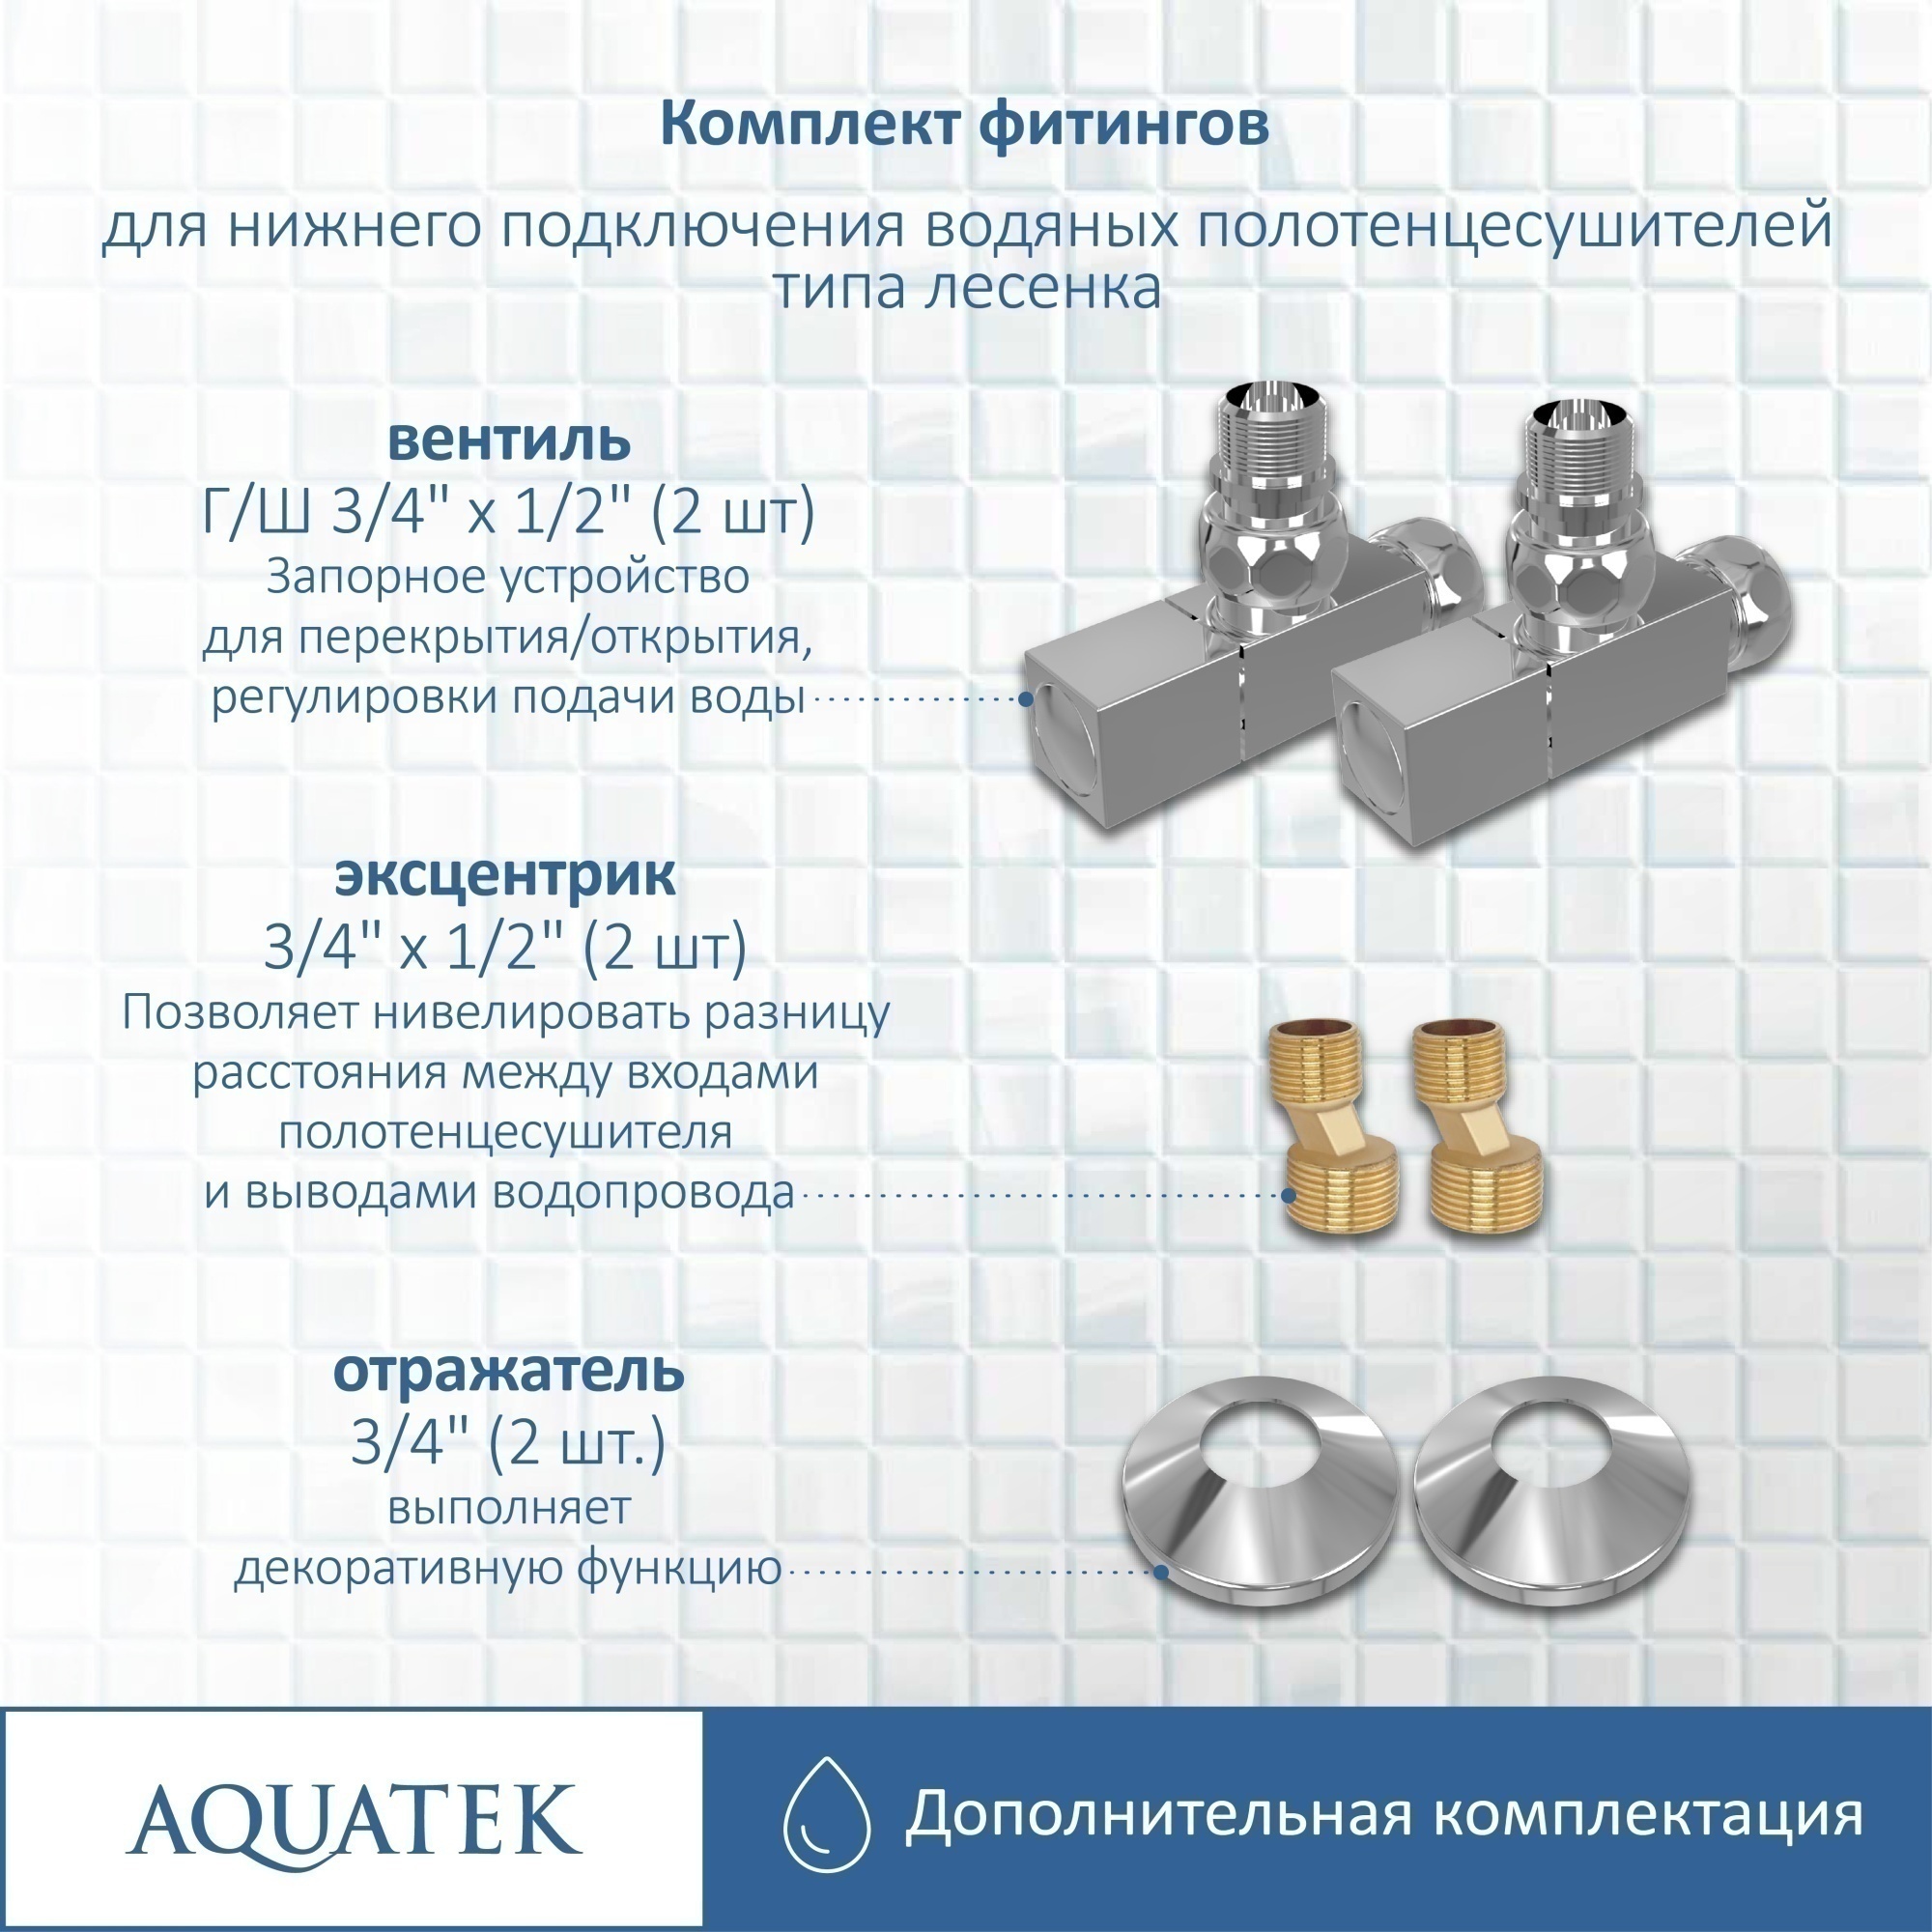 Комплект фитингов для нижнего подключения водяных полотенцесушителей Aquatek AQ 2020CH